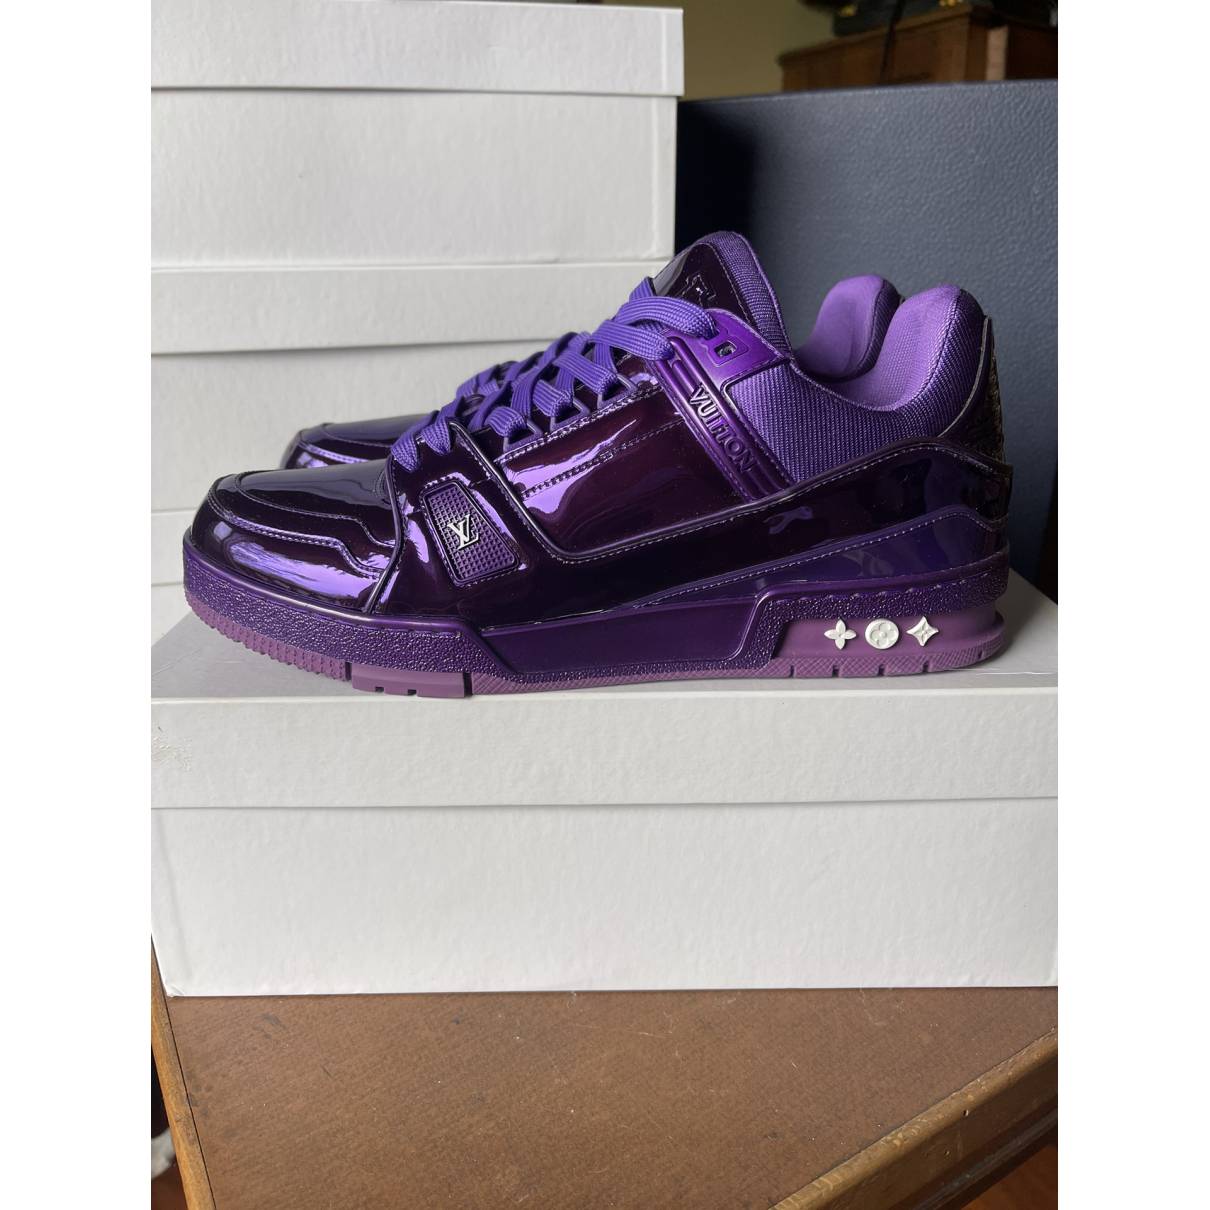 Louis Vuitton purple trainer #balenciaga #louisvuitton #trainer